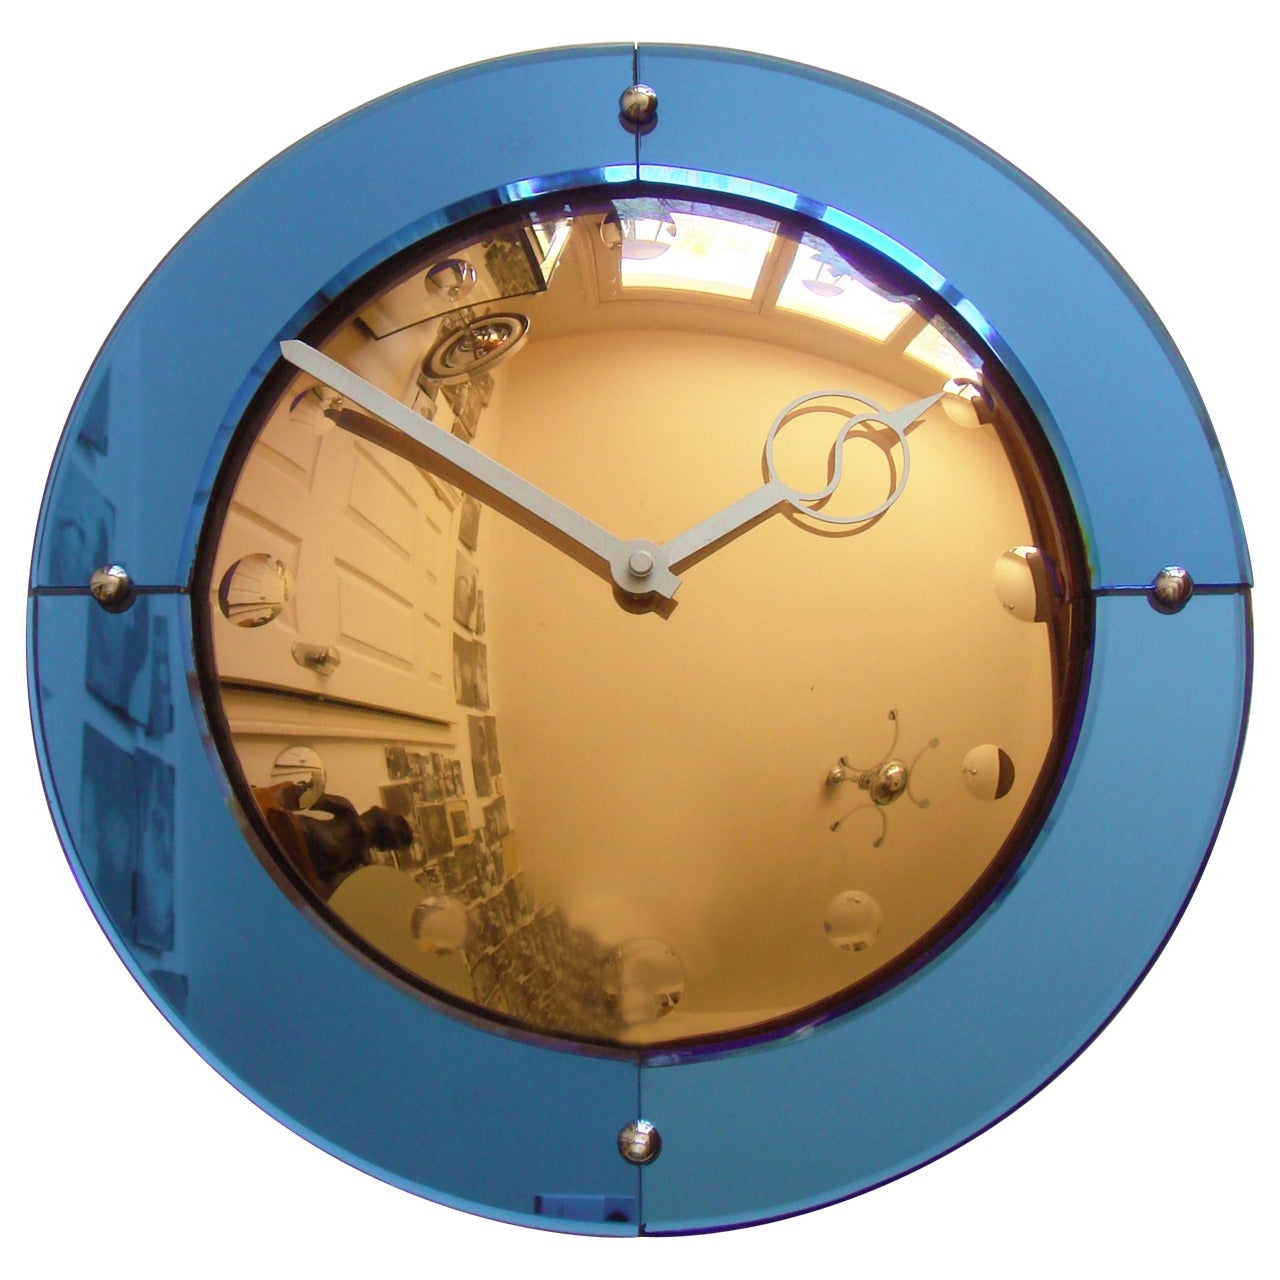 English Art Deco Convex Peach and Cobalt Mirror 'Venus' Wall Clock by Smiths